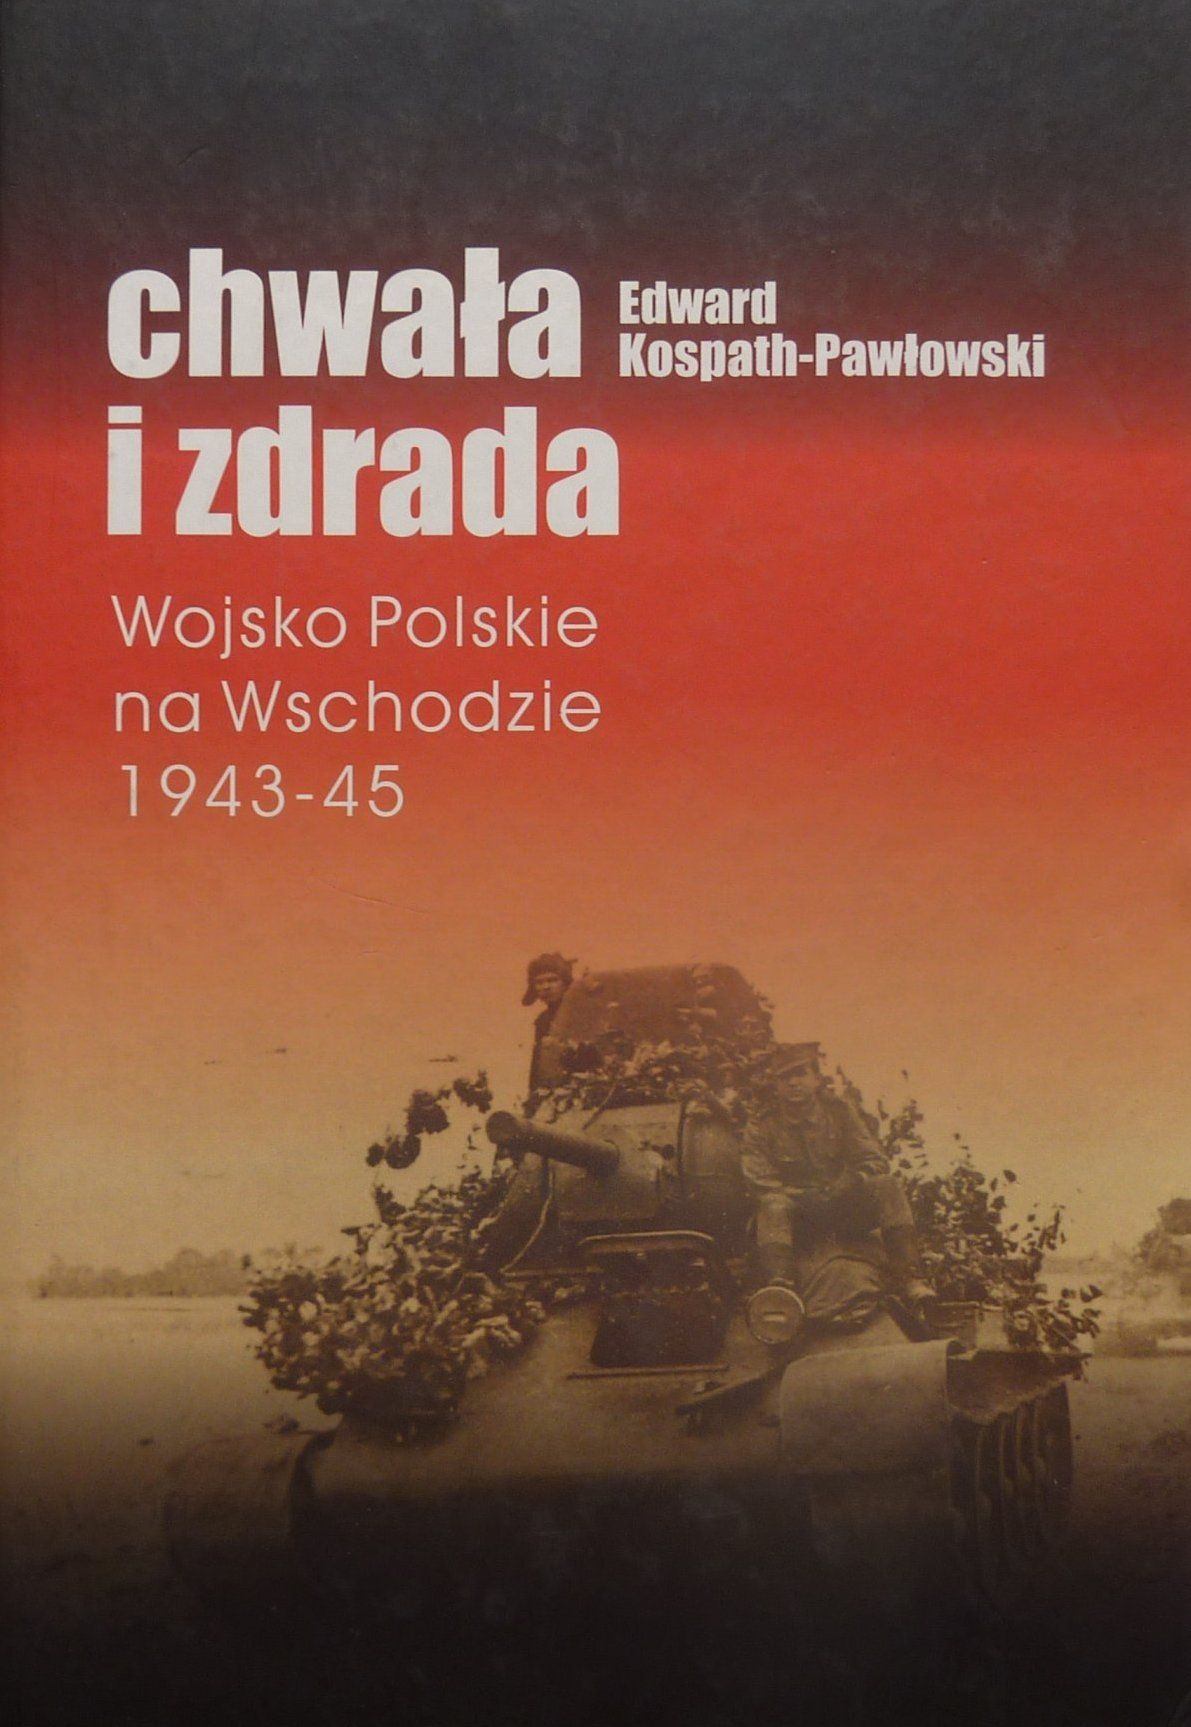 Artykuł został oparty między innymi na książce Edwarda Kospath-Pawłowskiego podtytułem "Chwała i zdrada. Wojsko Polskie na Wschodzie 1943-1945" (Wydawnictwo Inicjał 2010).